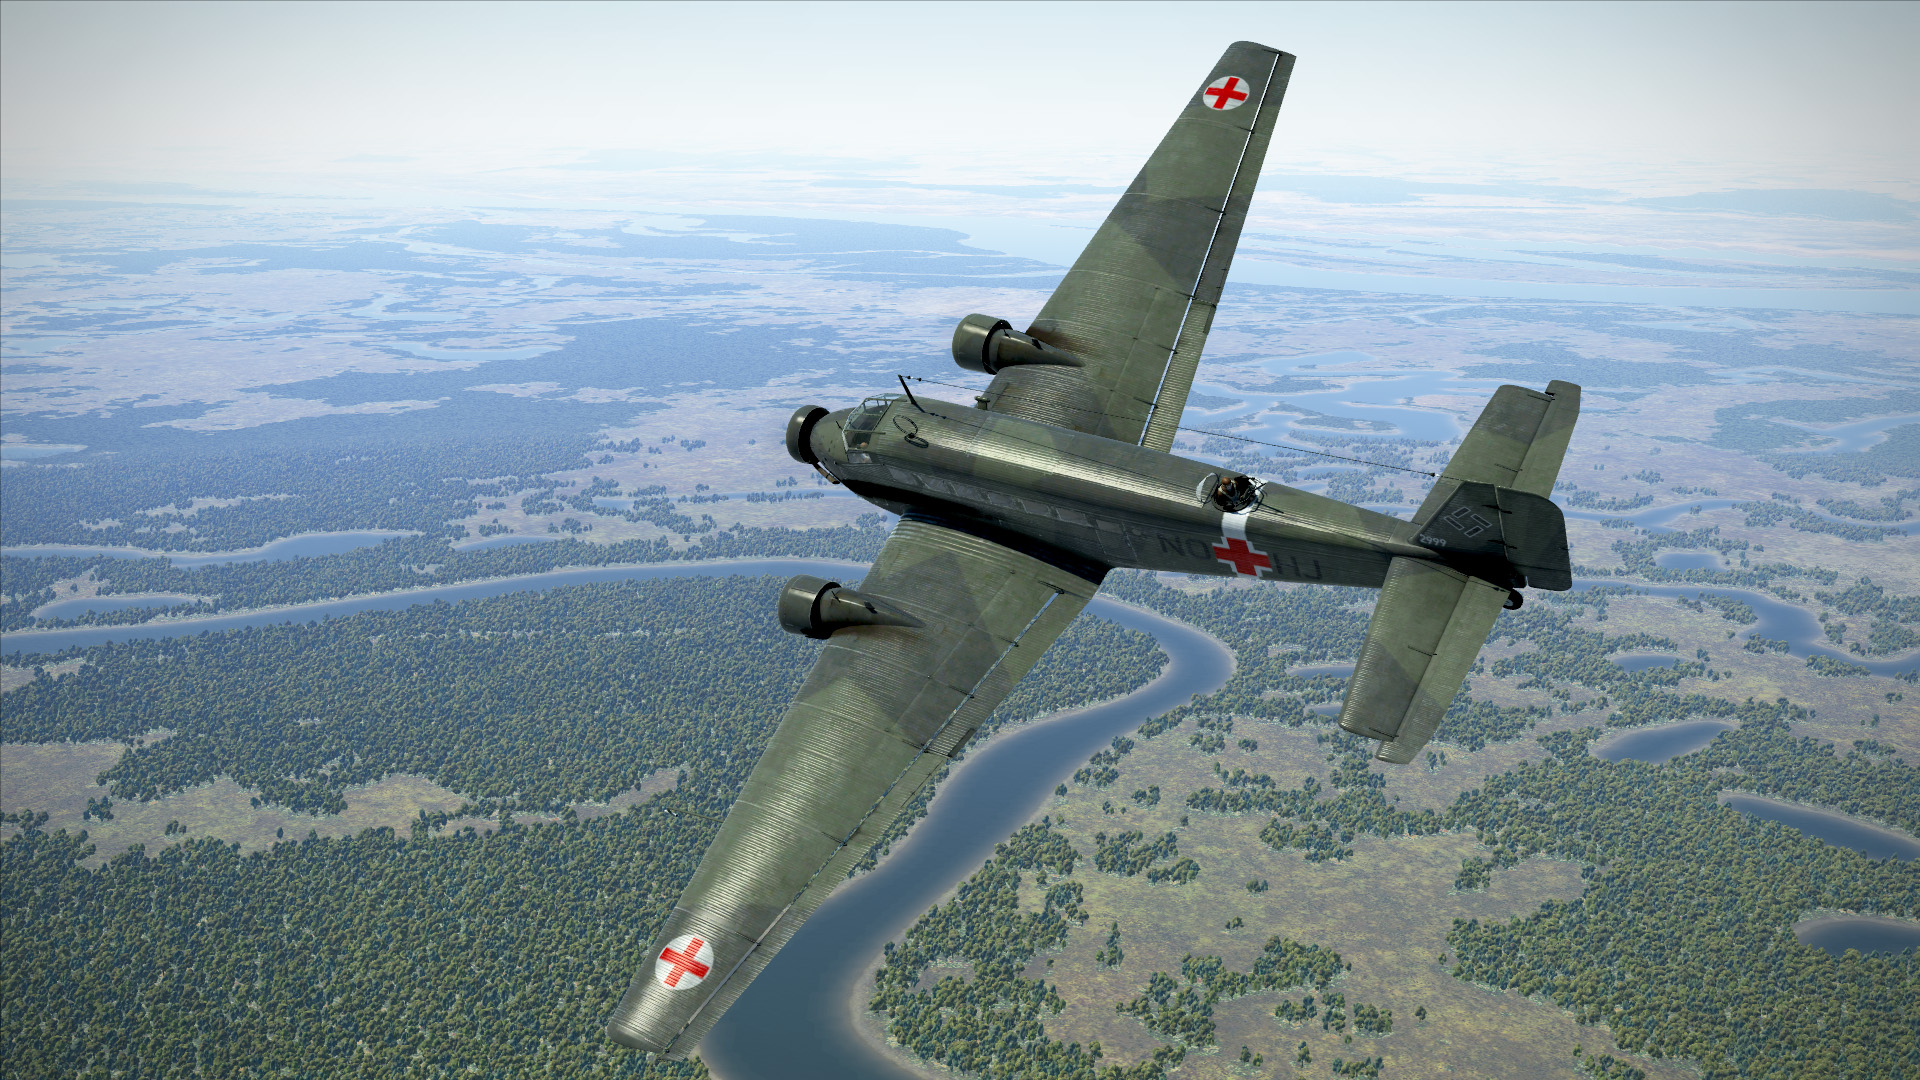 IL-2 Sturmovik: Ju 52/Зm Collector Plane screenshot